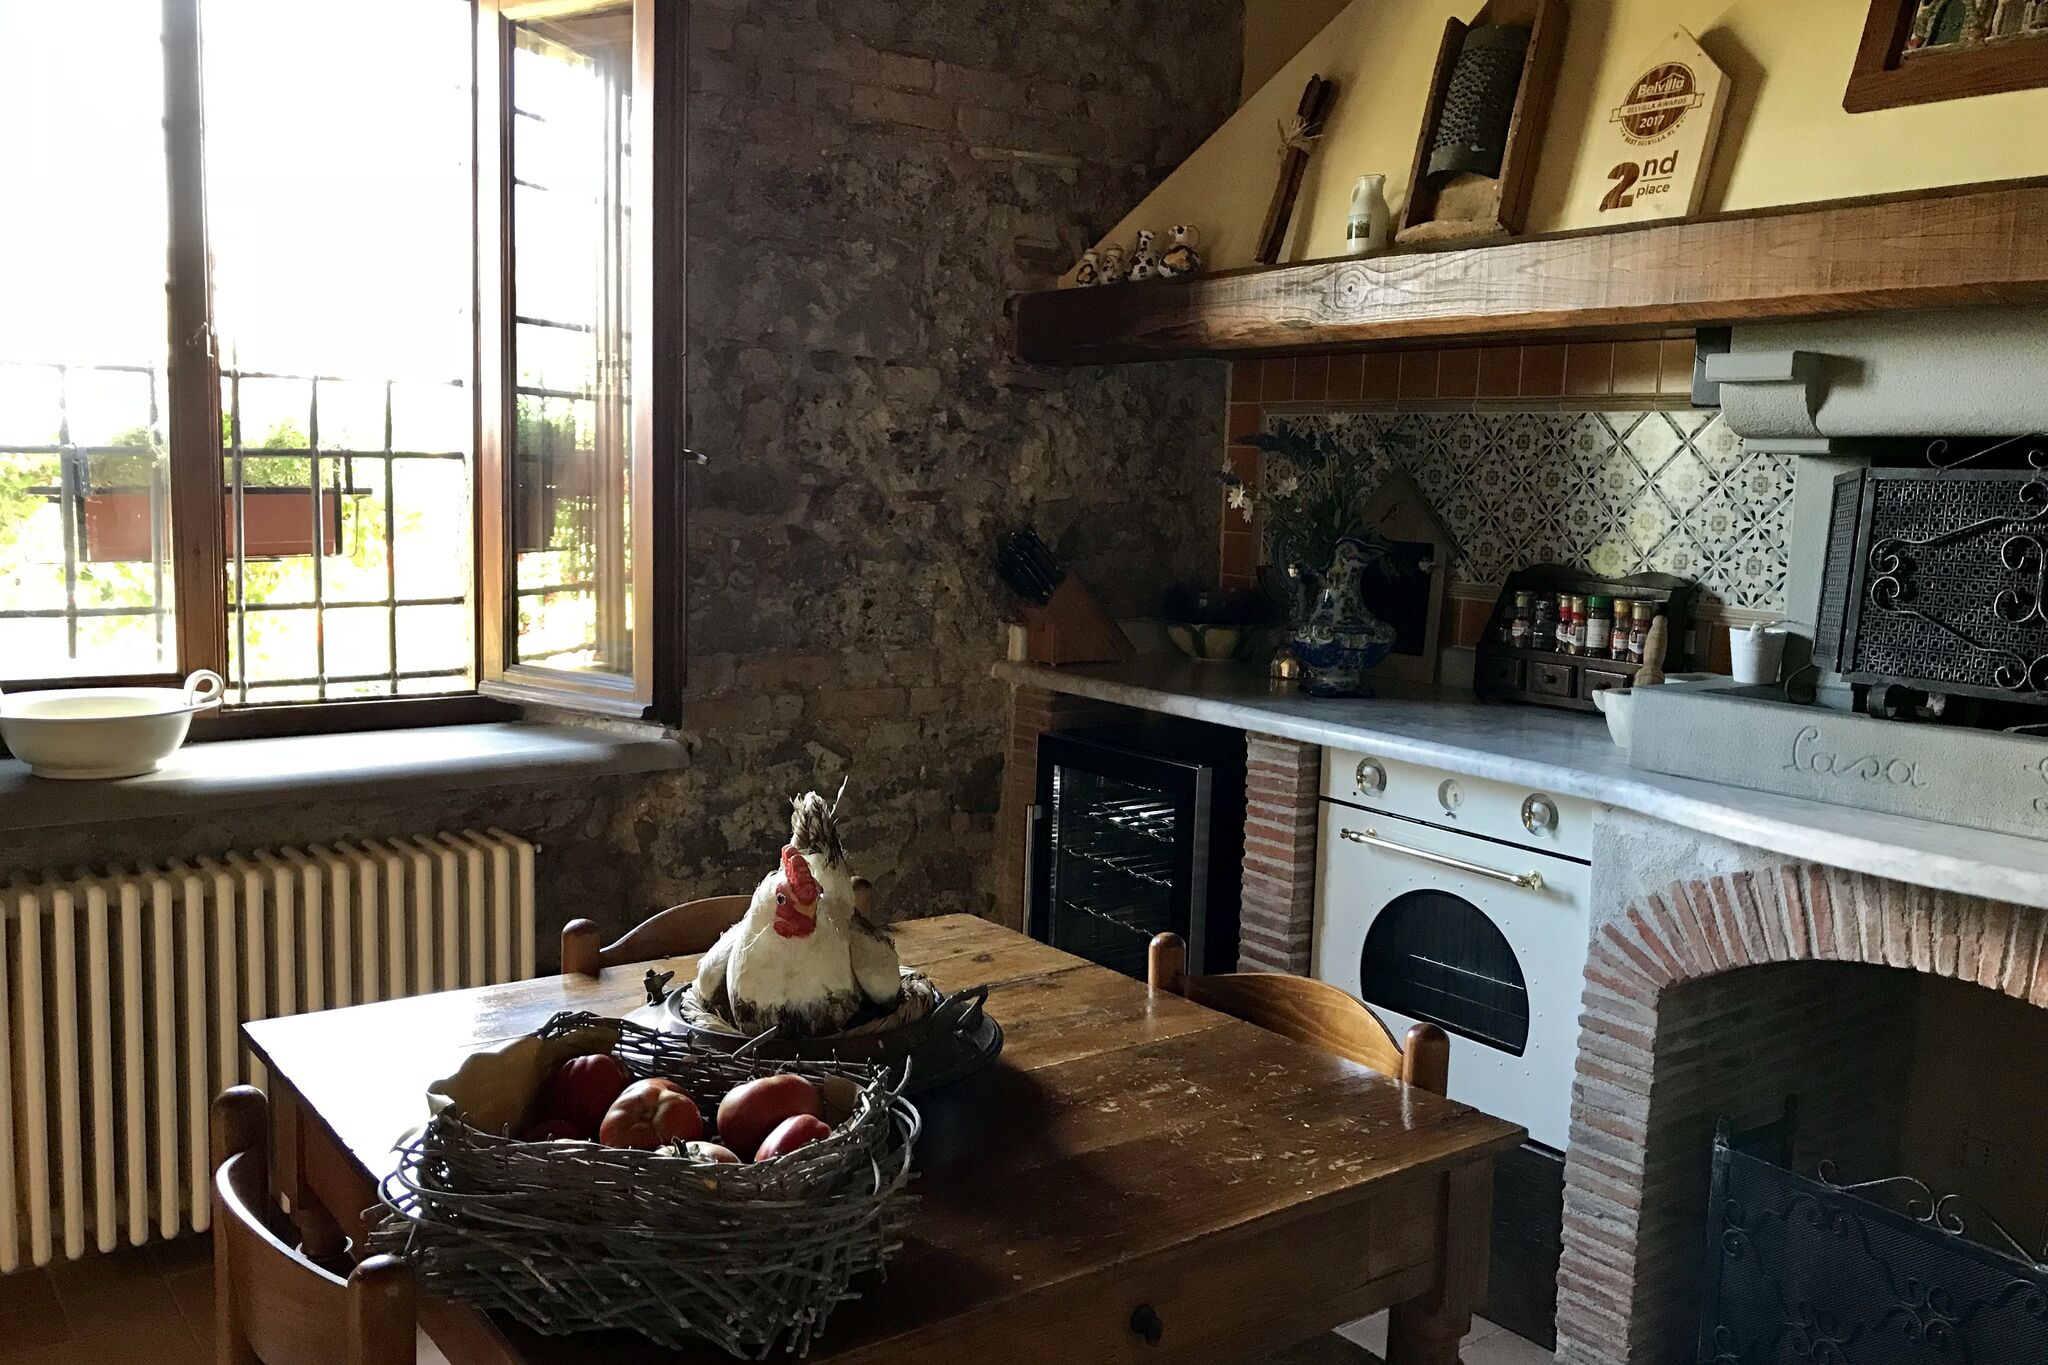 Maison de vacances à Castiglione di Garfagnana avec barbecue